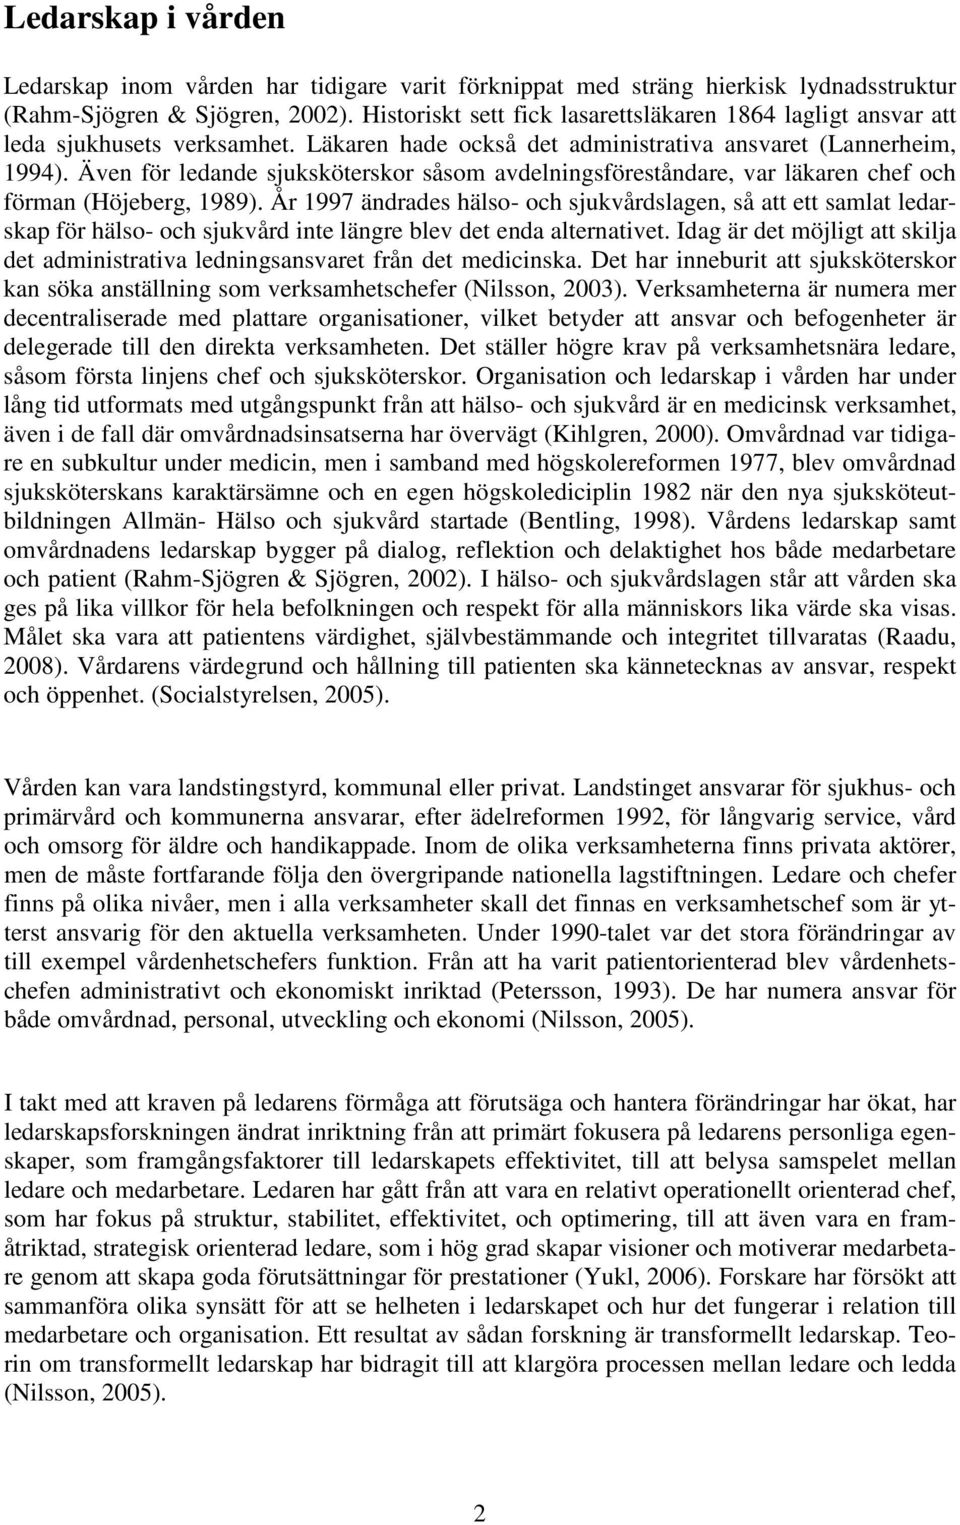 Även för ledande sjuksköterskor såsom avdelningsföreståndare, var läkaren chef och förman (Höjeberg, 1989).